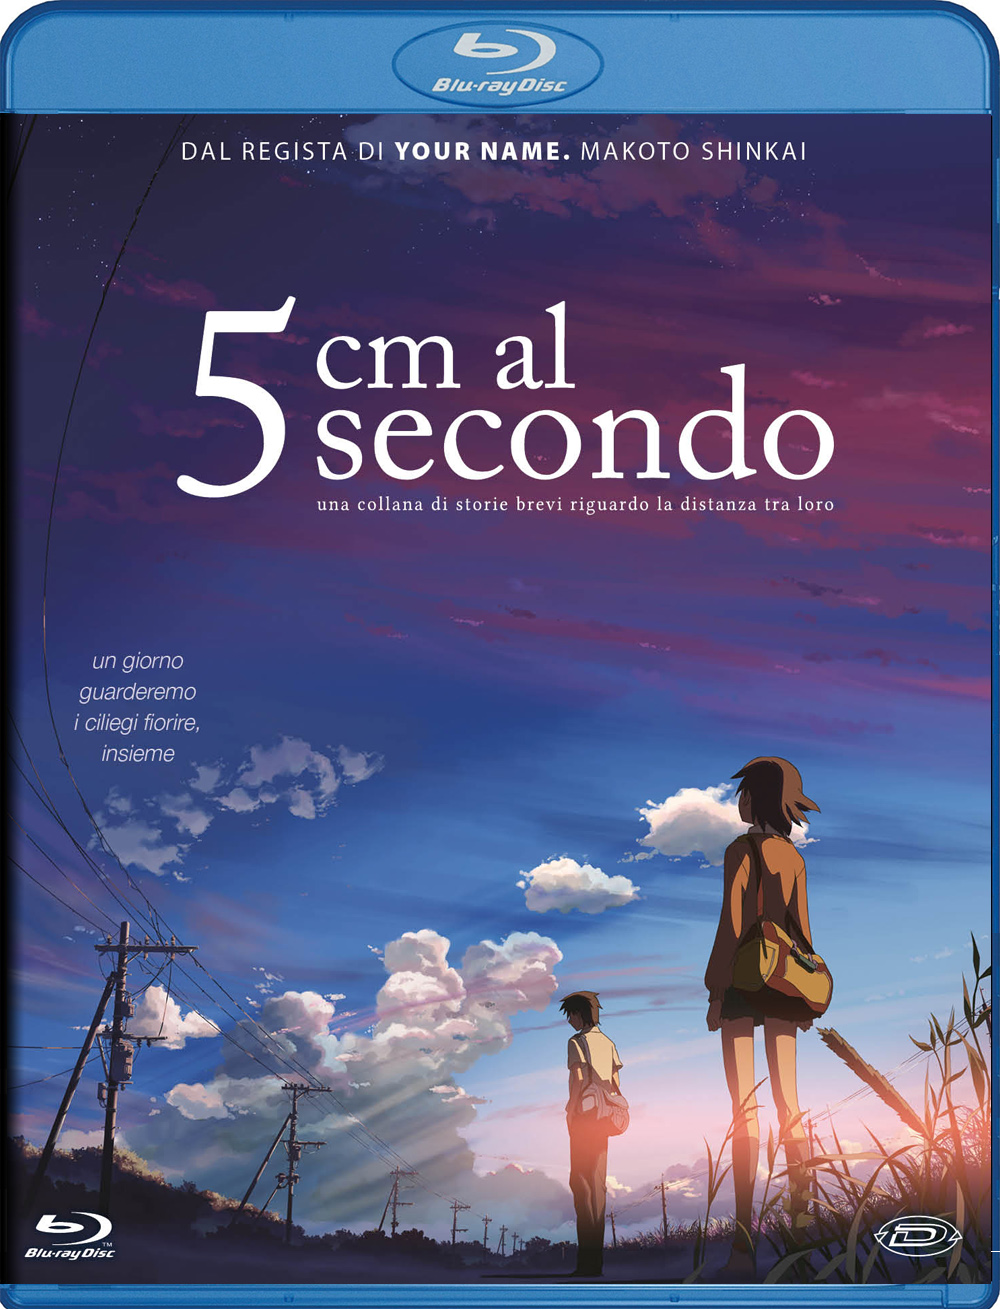 Blu-Ray 5 Cm Al Secondo (Standard Edition) NUOVO SIGILLATO, EDIZIONE DEL 24/07/2019 SUBITO DISPONIBILE